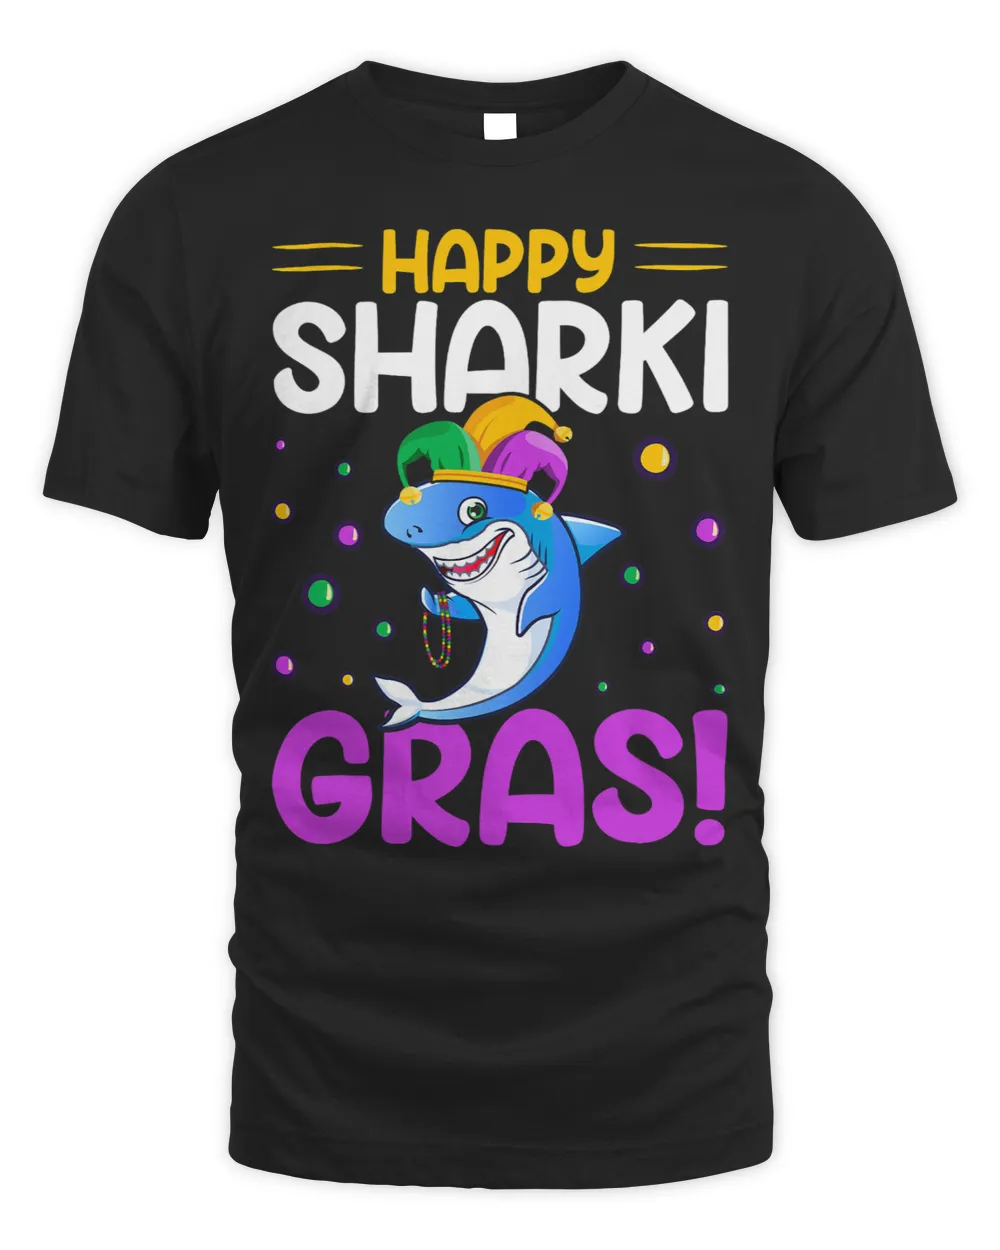 Shark Happy Sharki Grass Nola Mardi Gras Shark Lover Kids Boy Jaw Sharks